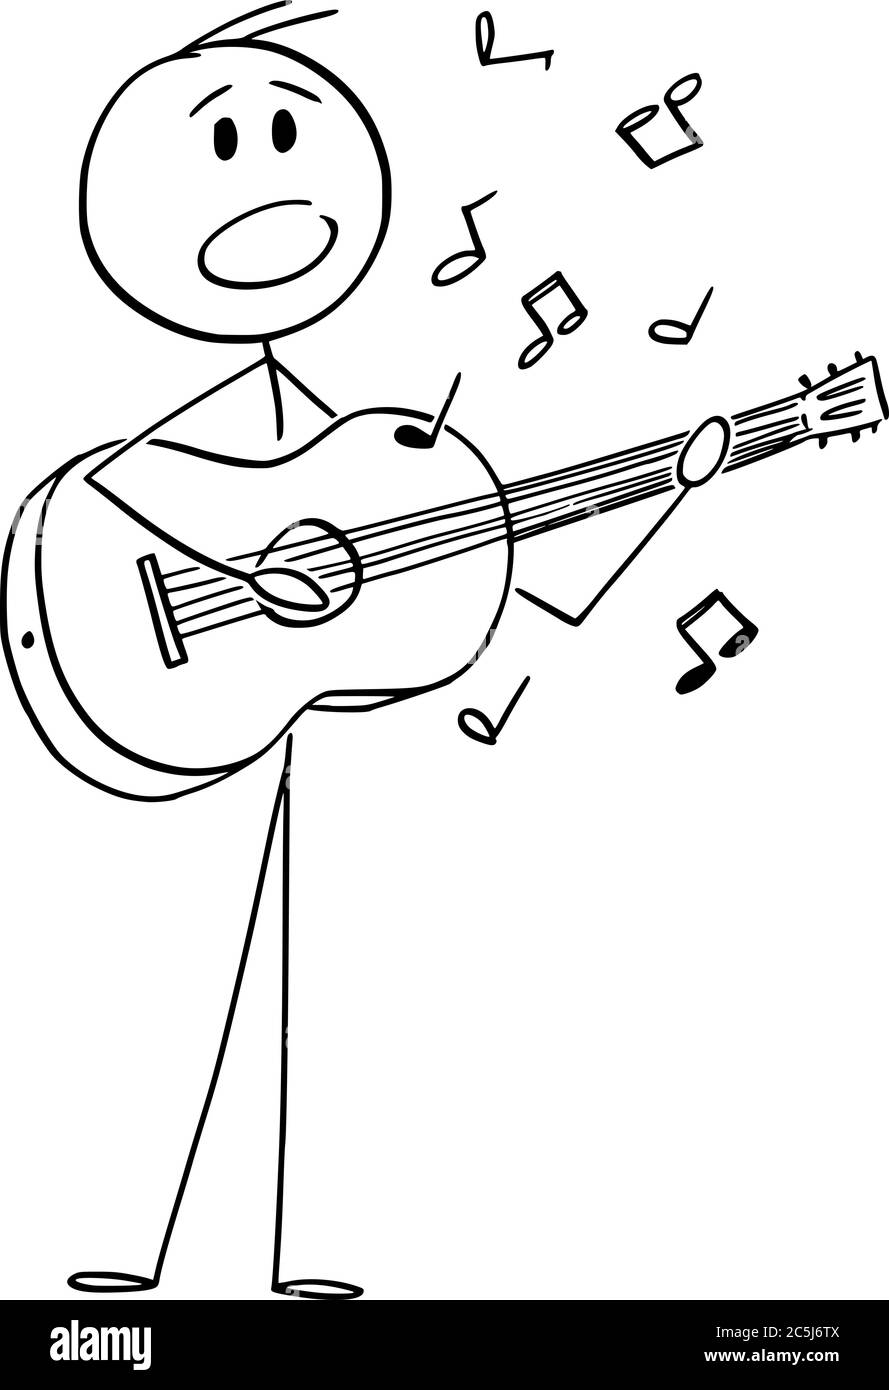 Dessin de dessin de dessin de dessin de dessin de dessin de dessin conceptuel d'un musicien ou d'un chanteur jouant de la musique sur guitare acoustique et chantant une chanson. Illustration de Vecteur